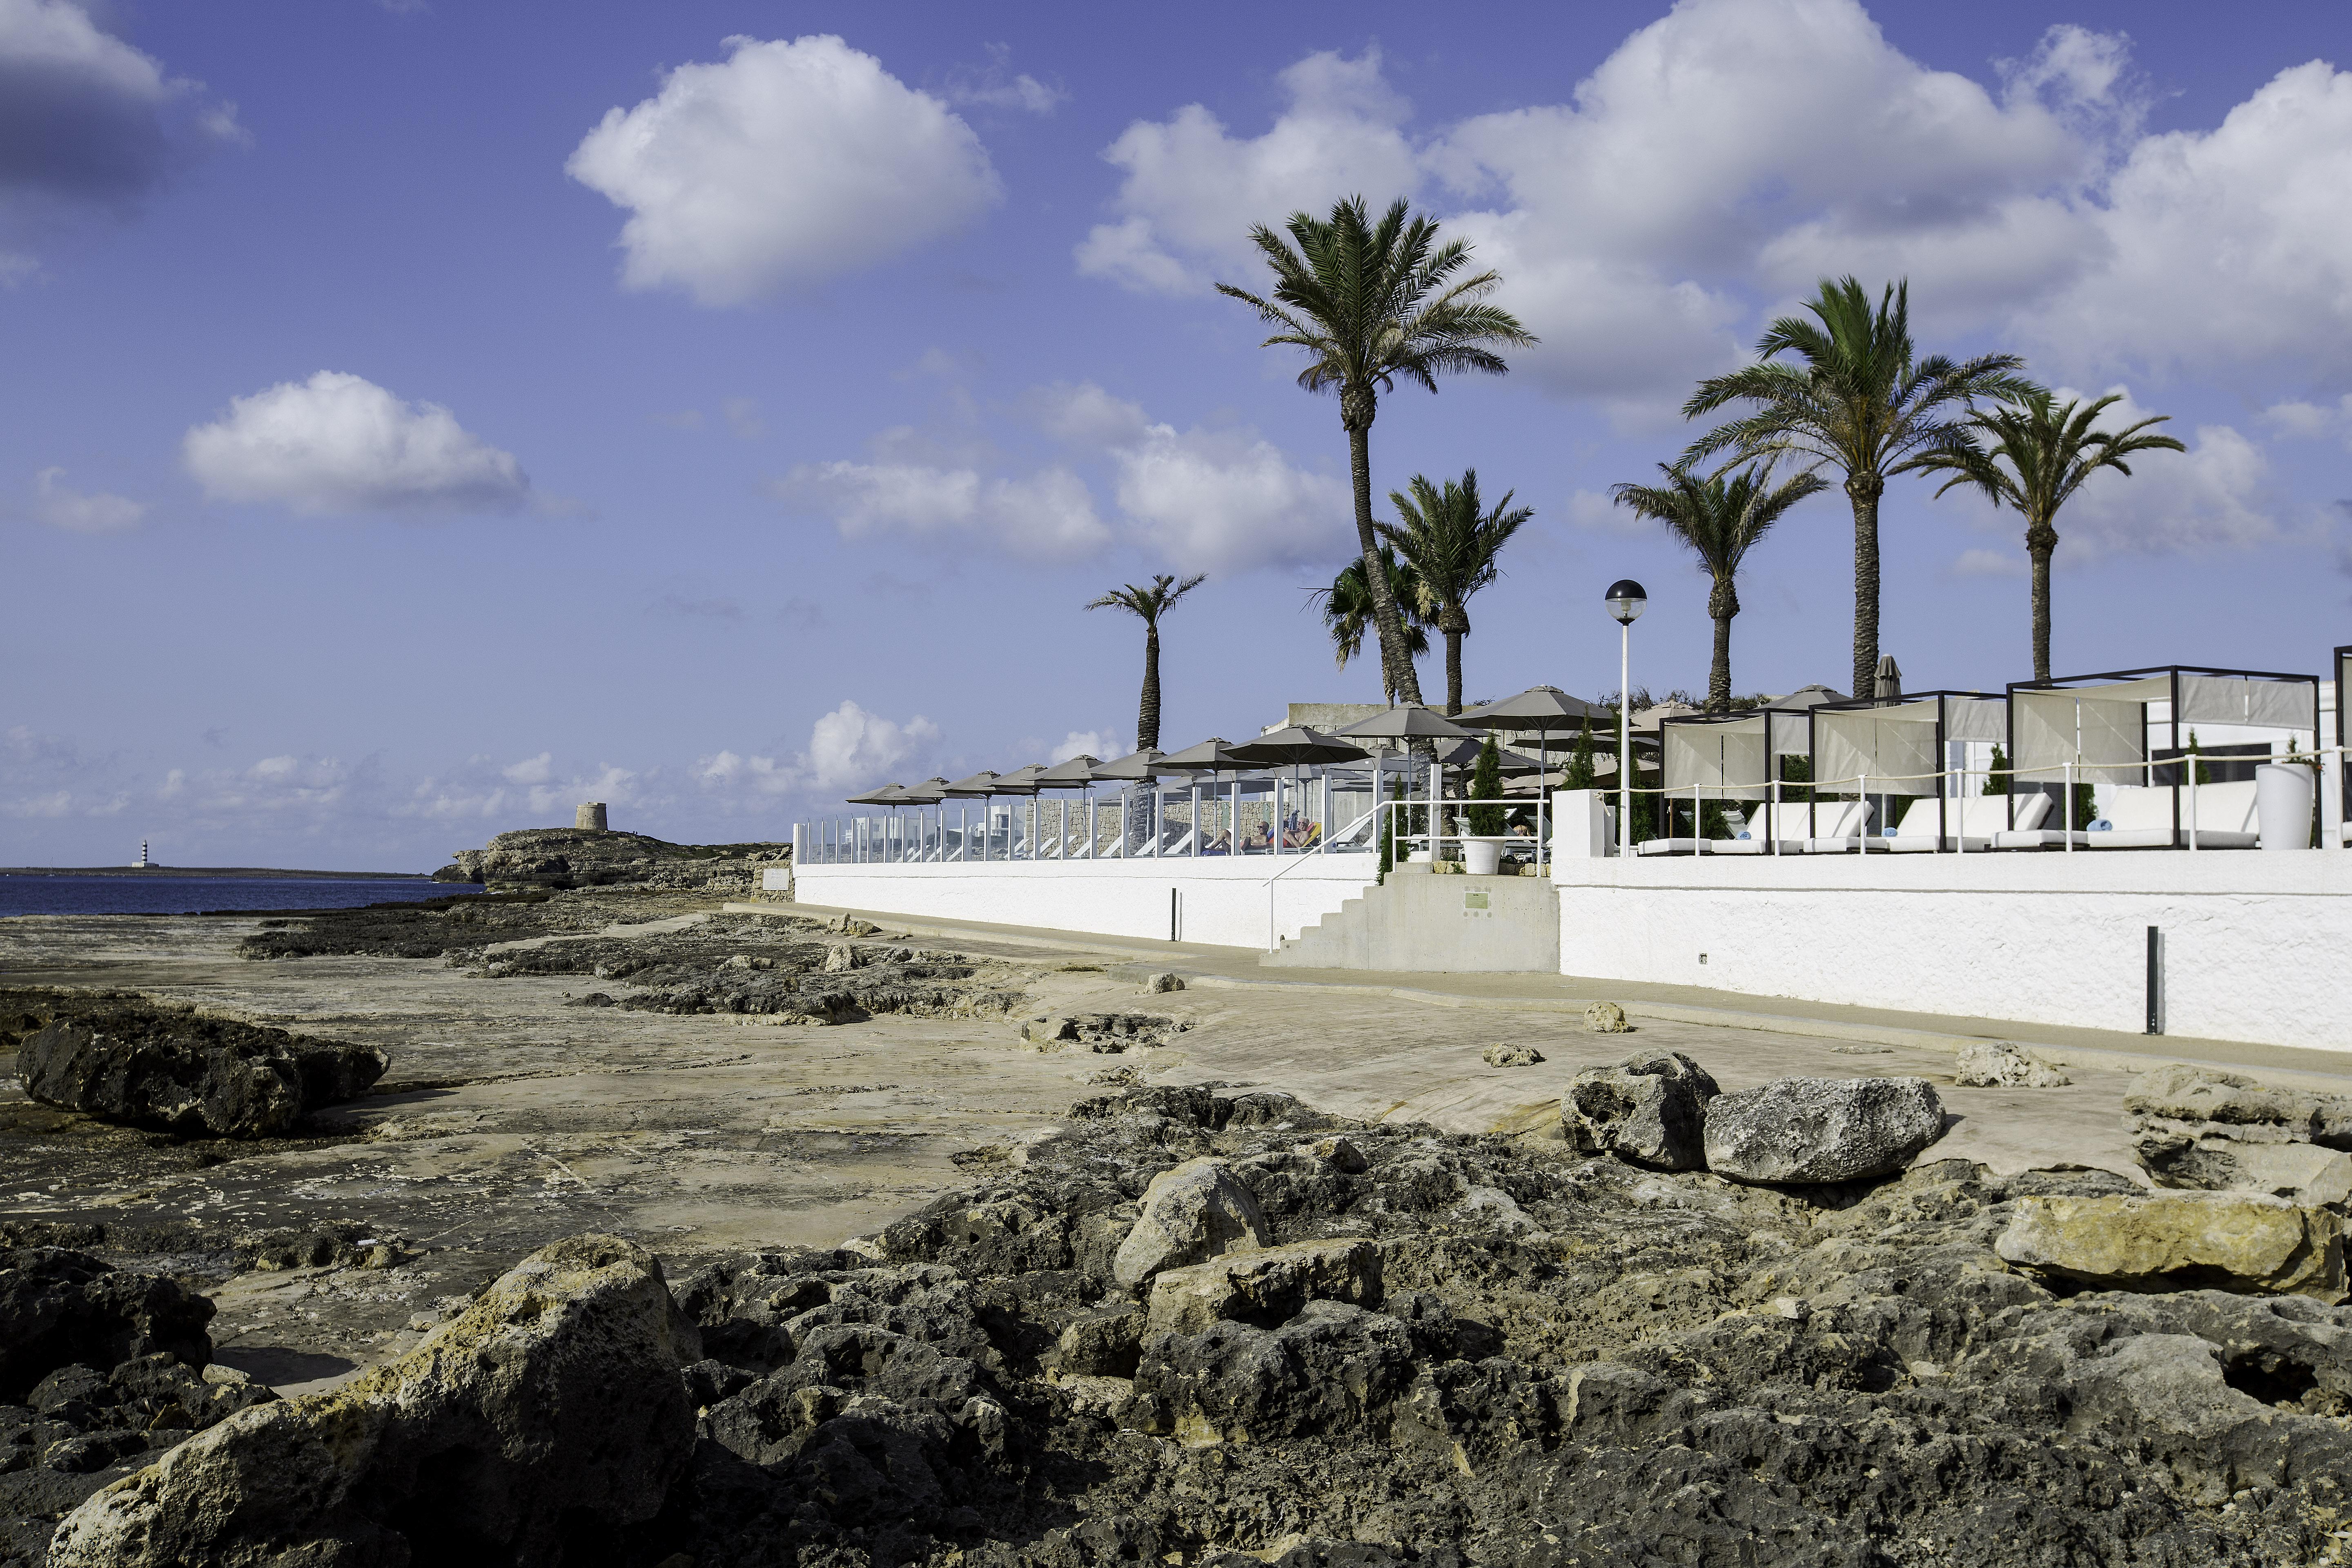 Aluasoul Menorca - Adults Only Hotel S'Algar Kültér fotó